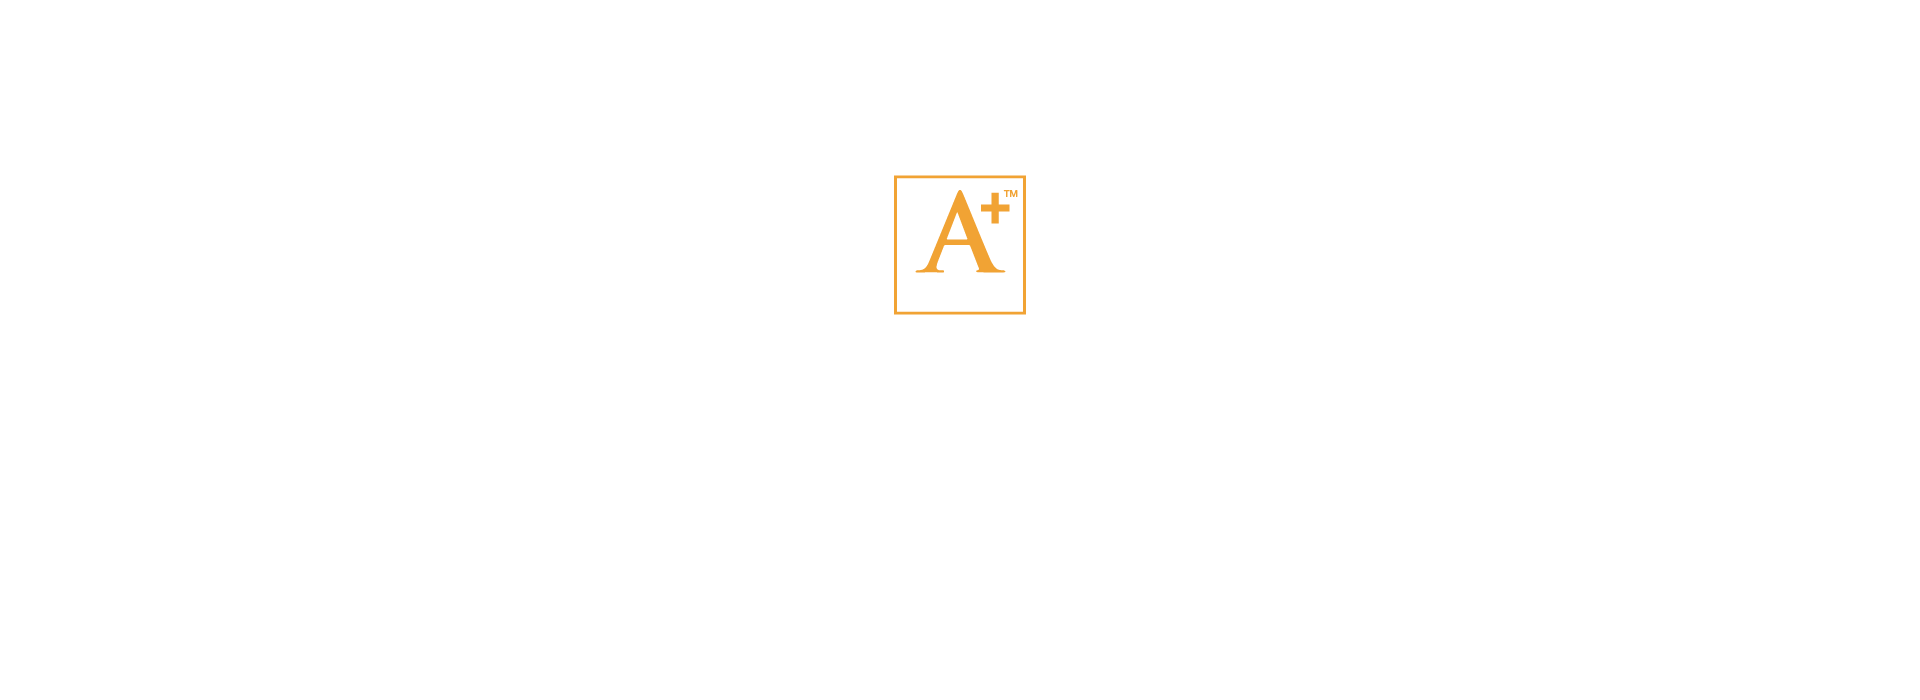 2017 Awards